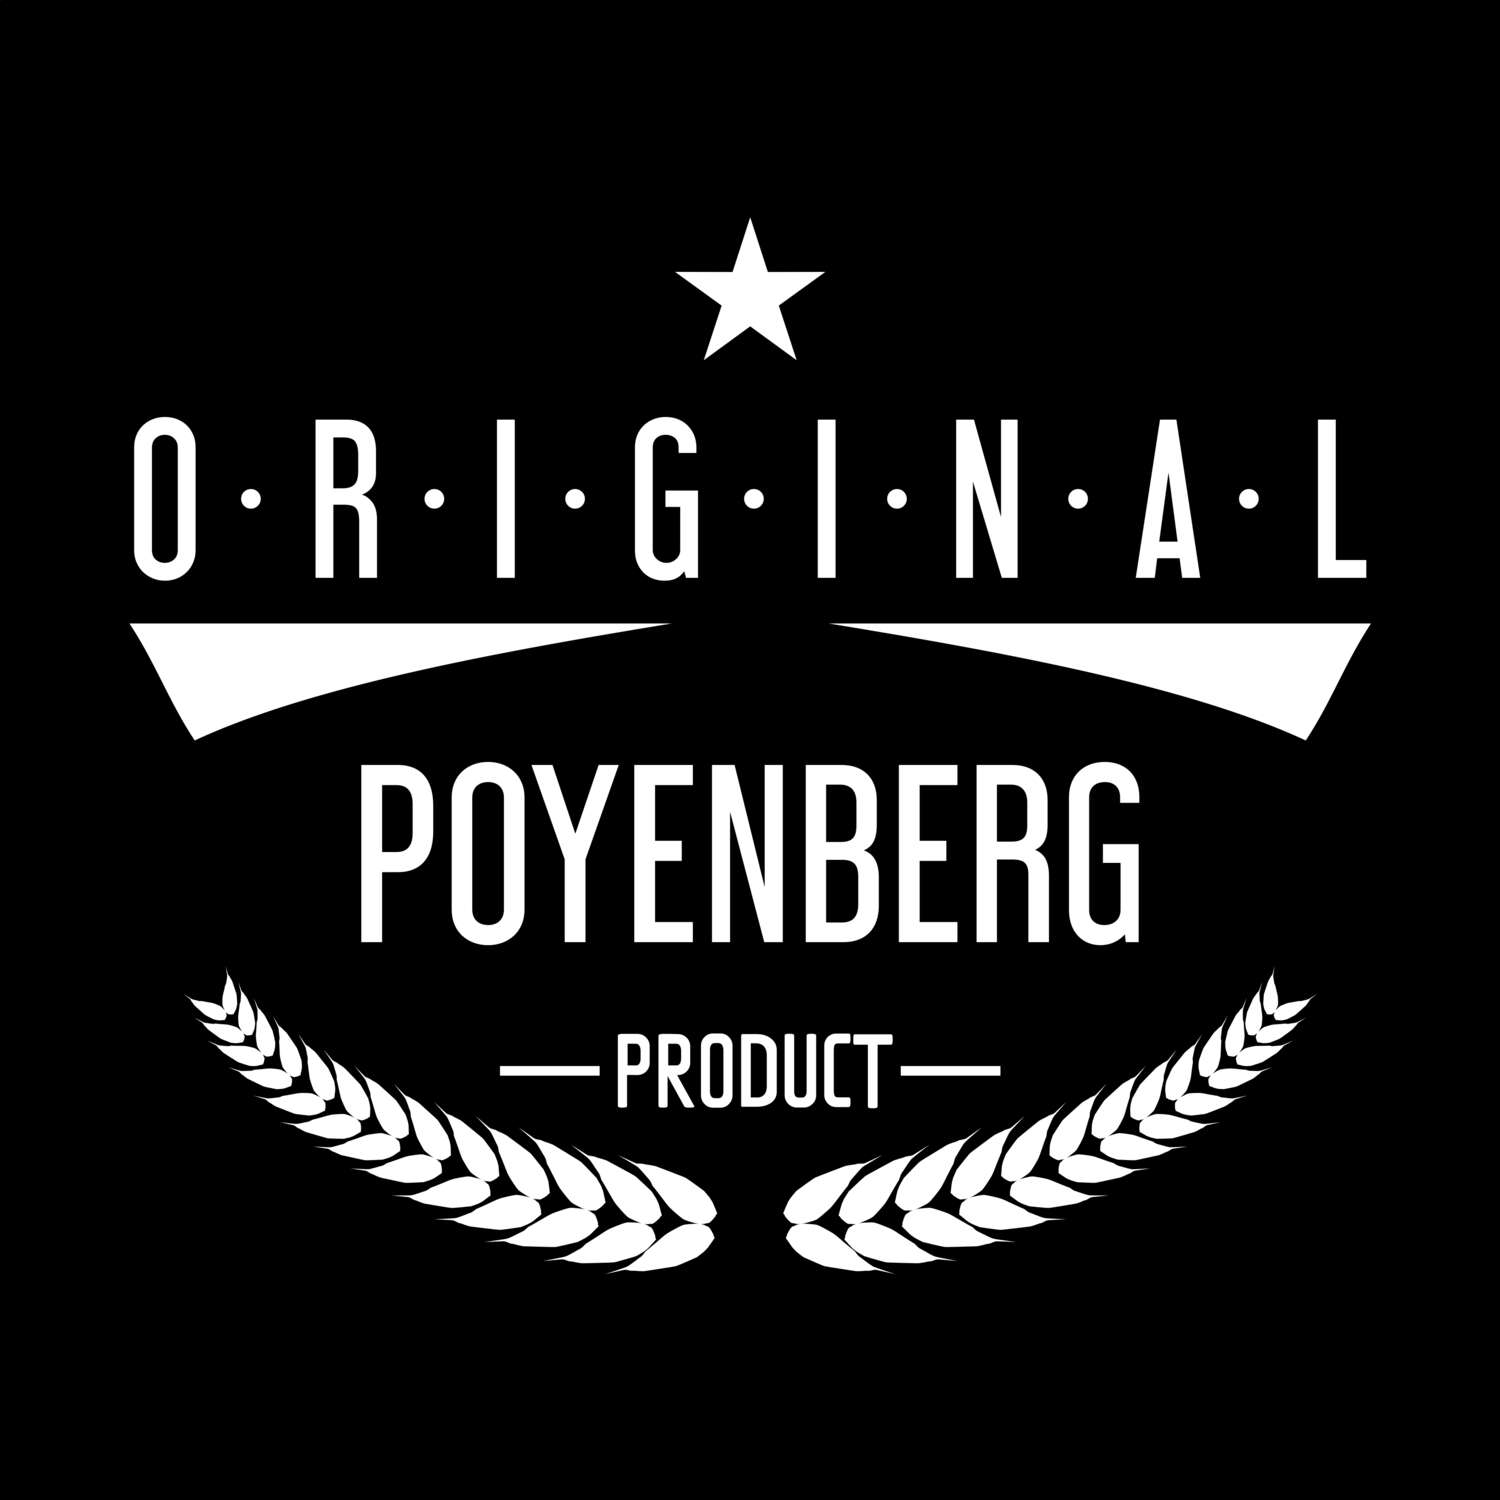 Poyenberg T-Shirt »Original Product«